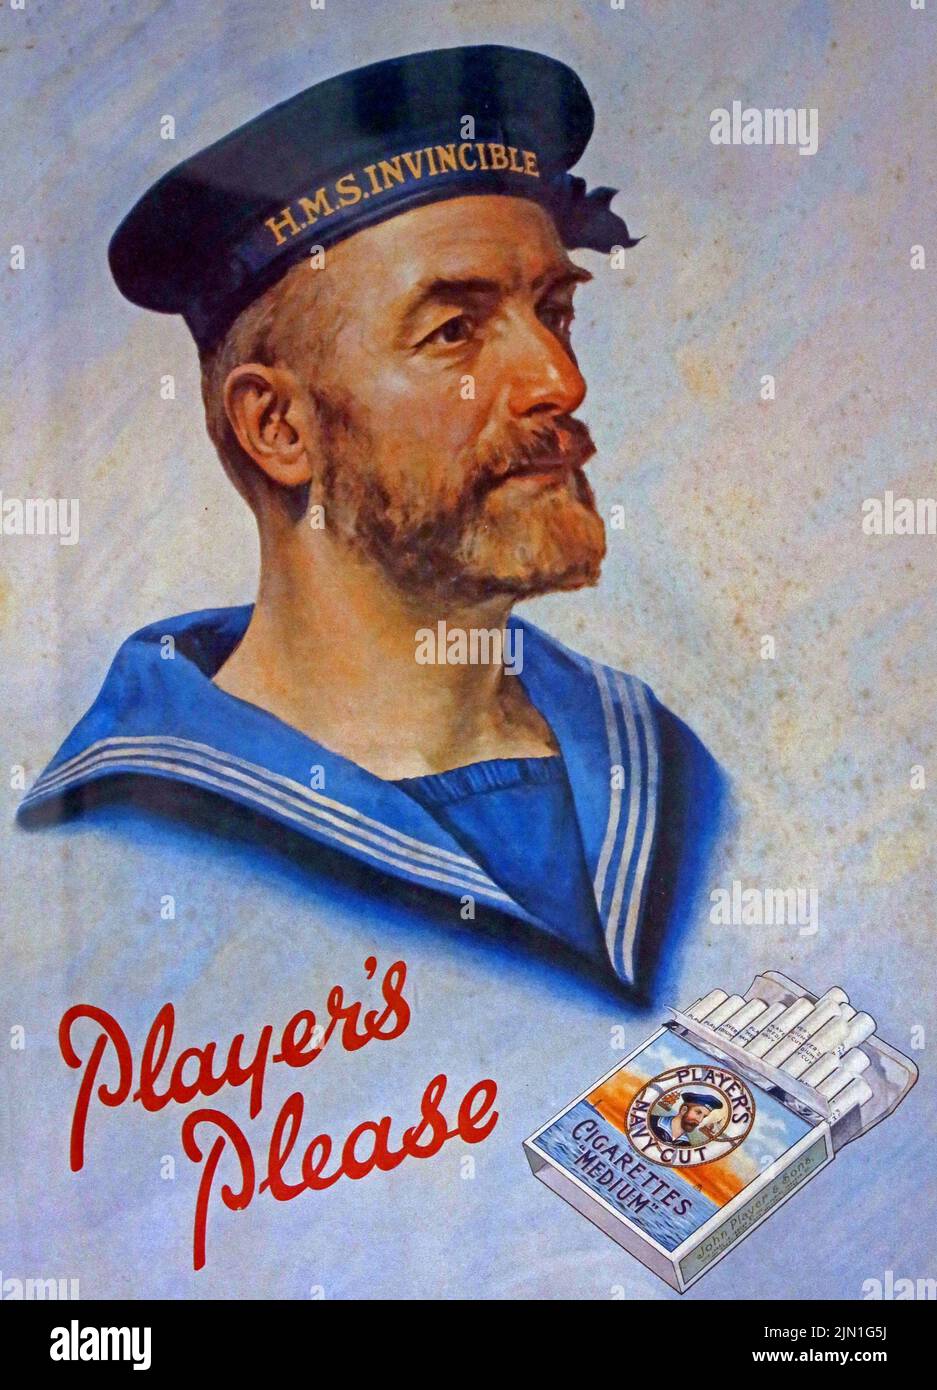 Affiche montrant, joueurs s'il vous plaît, HMS invincible, cigarettes, Grande-Bretagne Banque D'Images